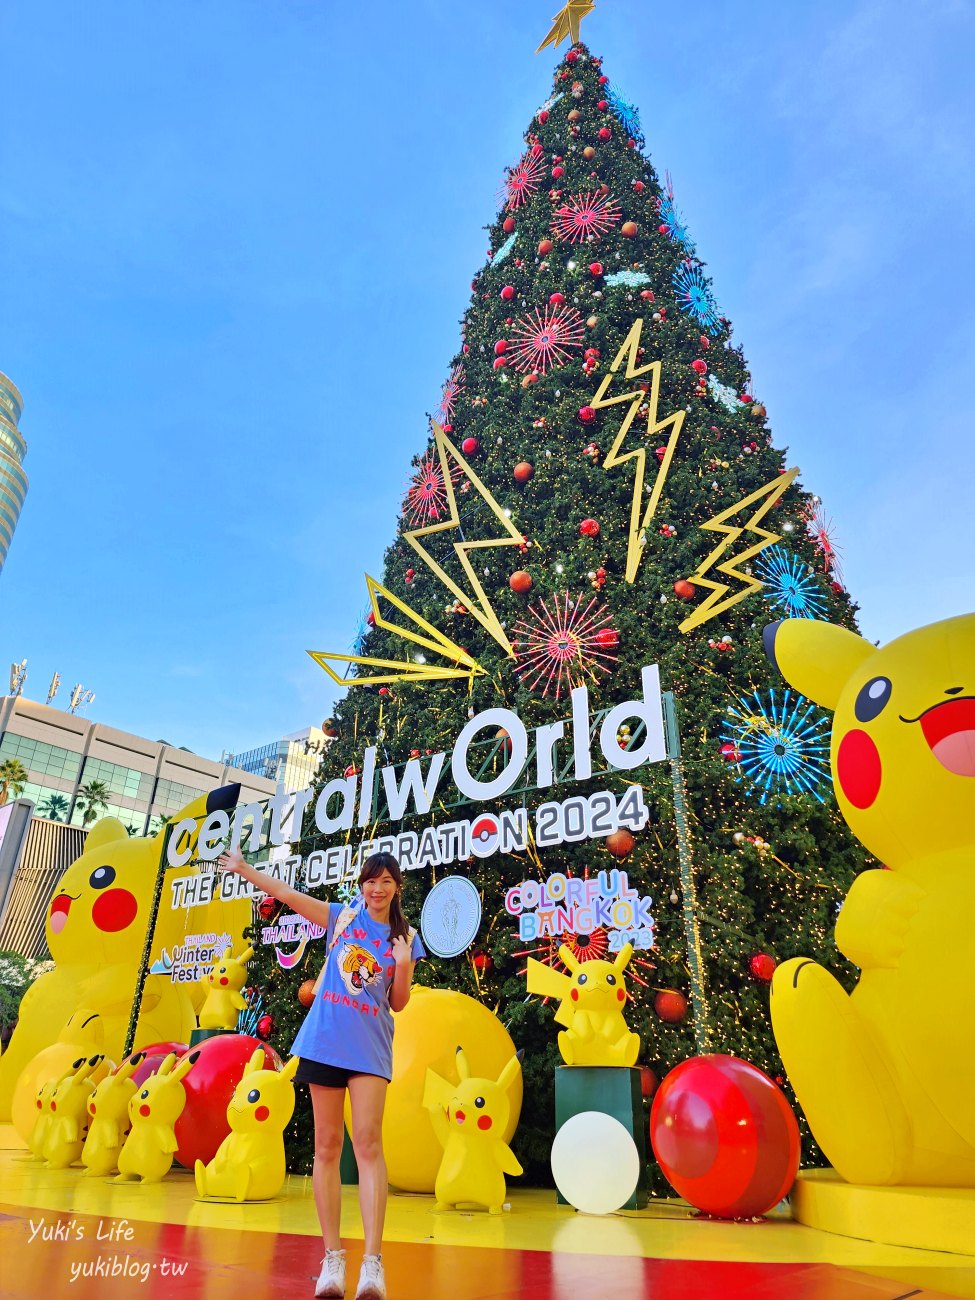 【泰國聖誕節】centralwOrld 巨型皮卡丘聖誕樹，寶可夢大集合~陪你跨年太療癒~ - yukiblog.tw